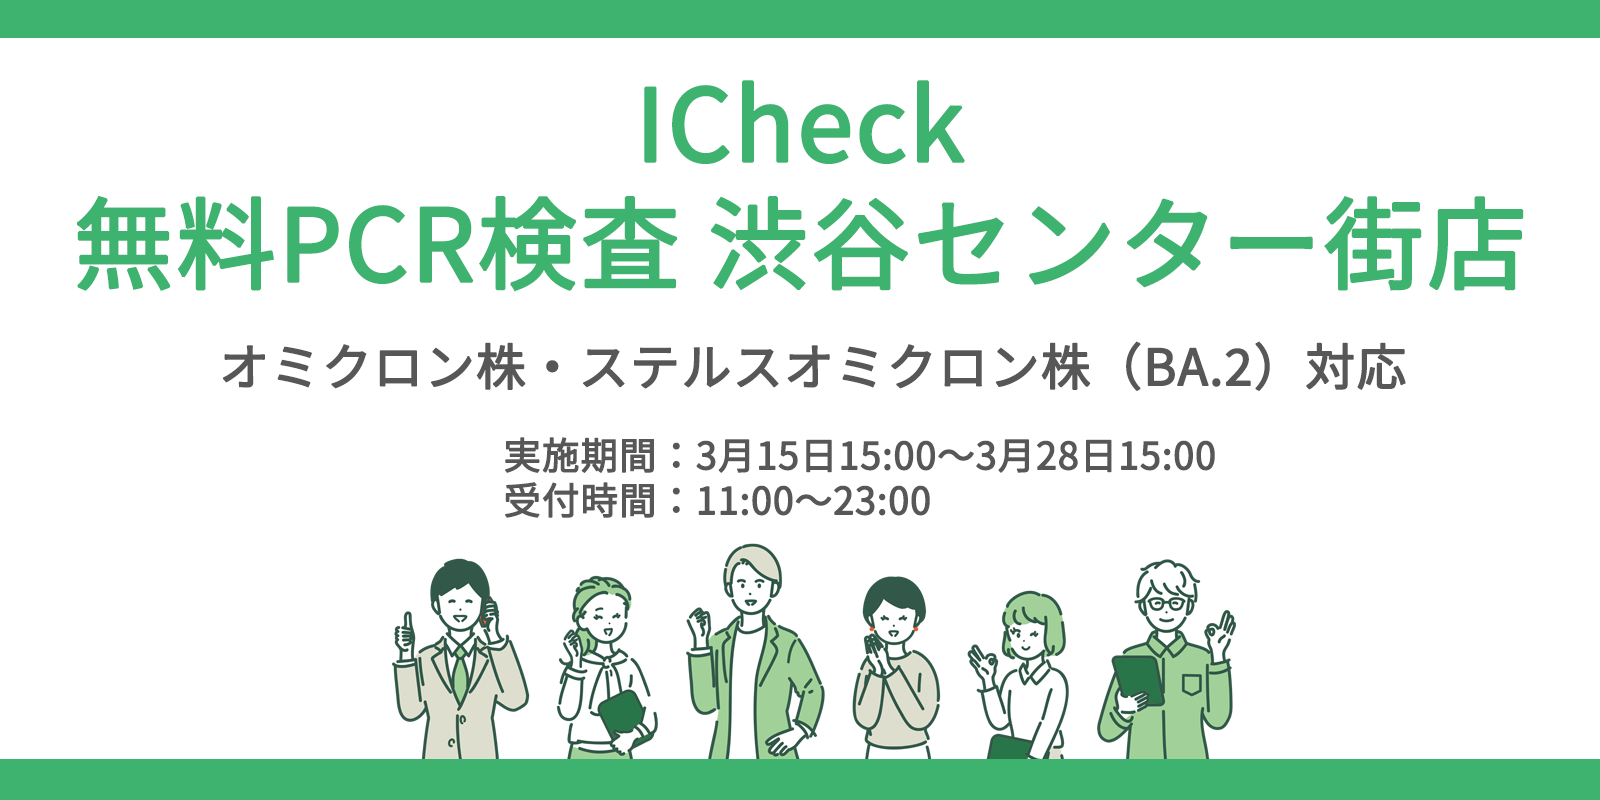 Icheckは無料pcr検査センターを渋谷で開始 Icheck株式会社のプレスリリース